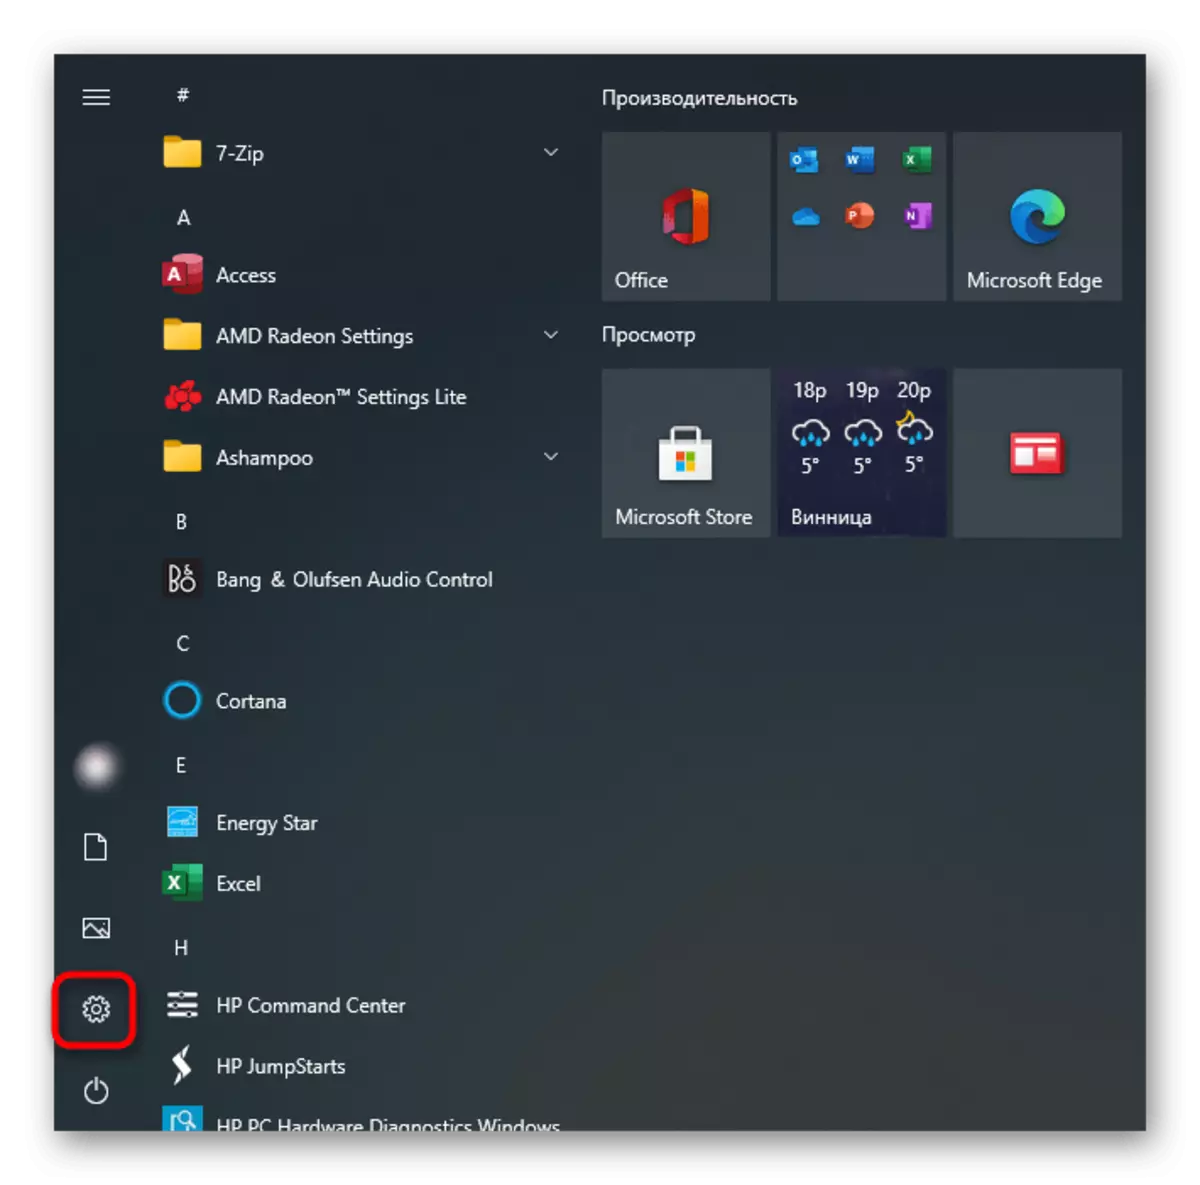 Windows 10 తో HP ల్యాప్టాప్లో టచ్ప్యాడ్ను ఆన్ చేయడానికి పారామితులకు మారండి